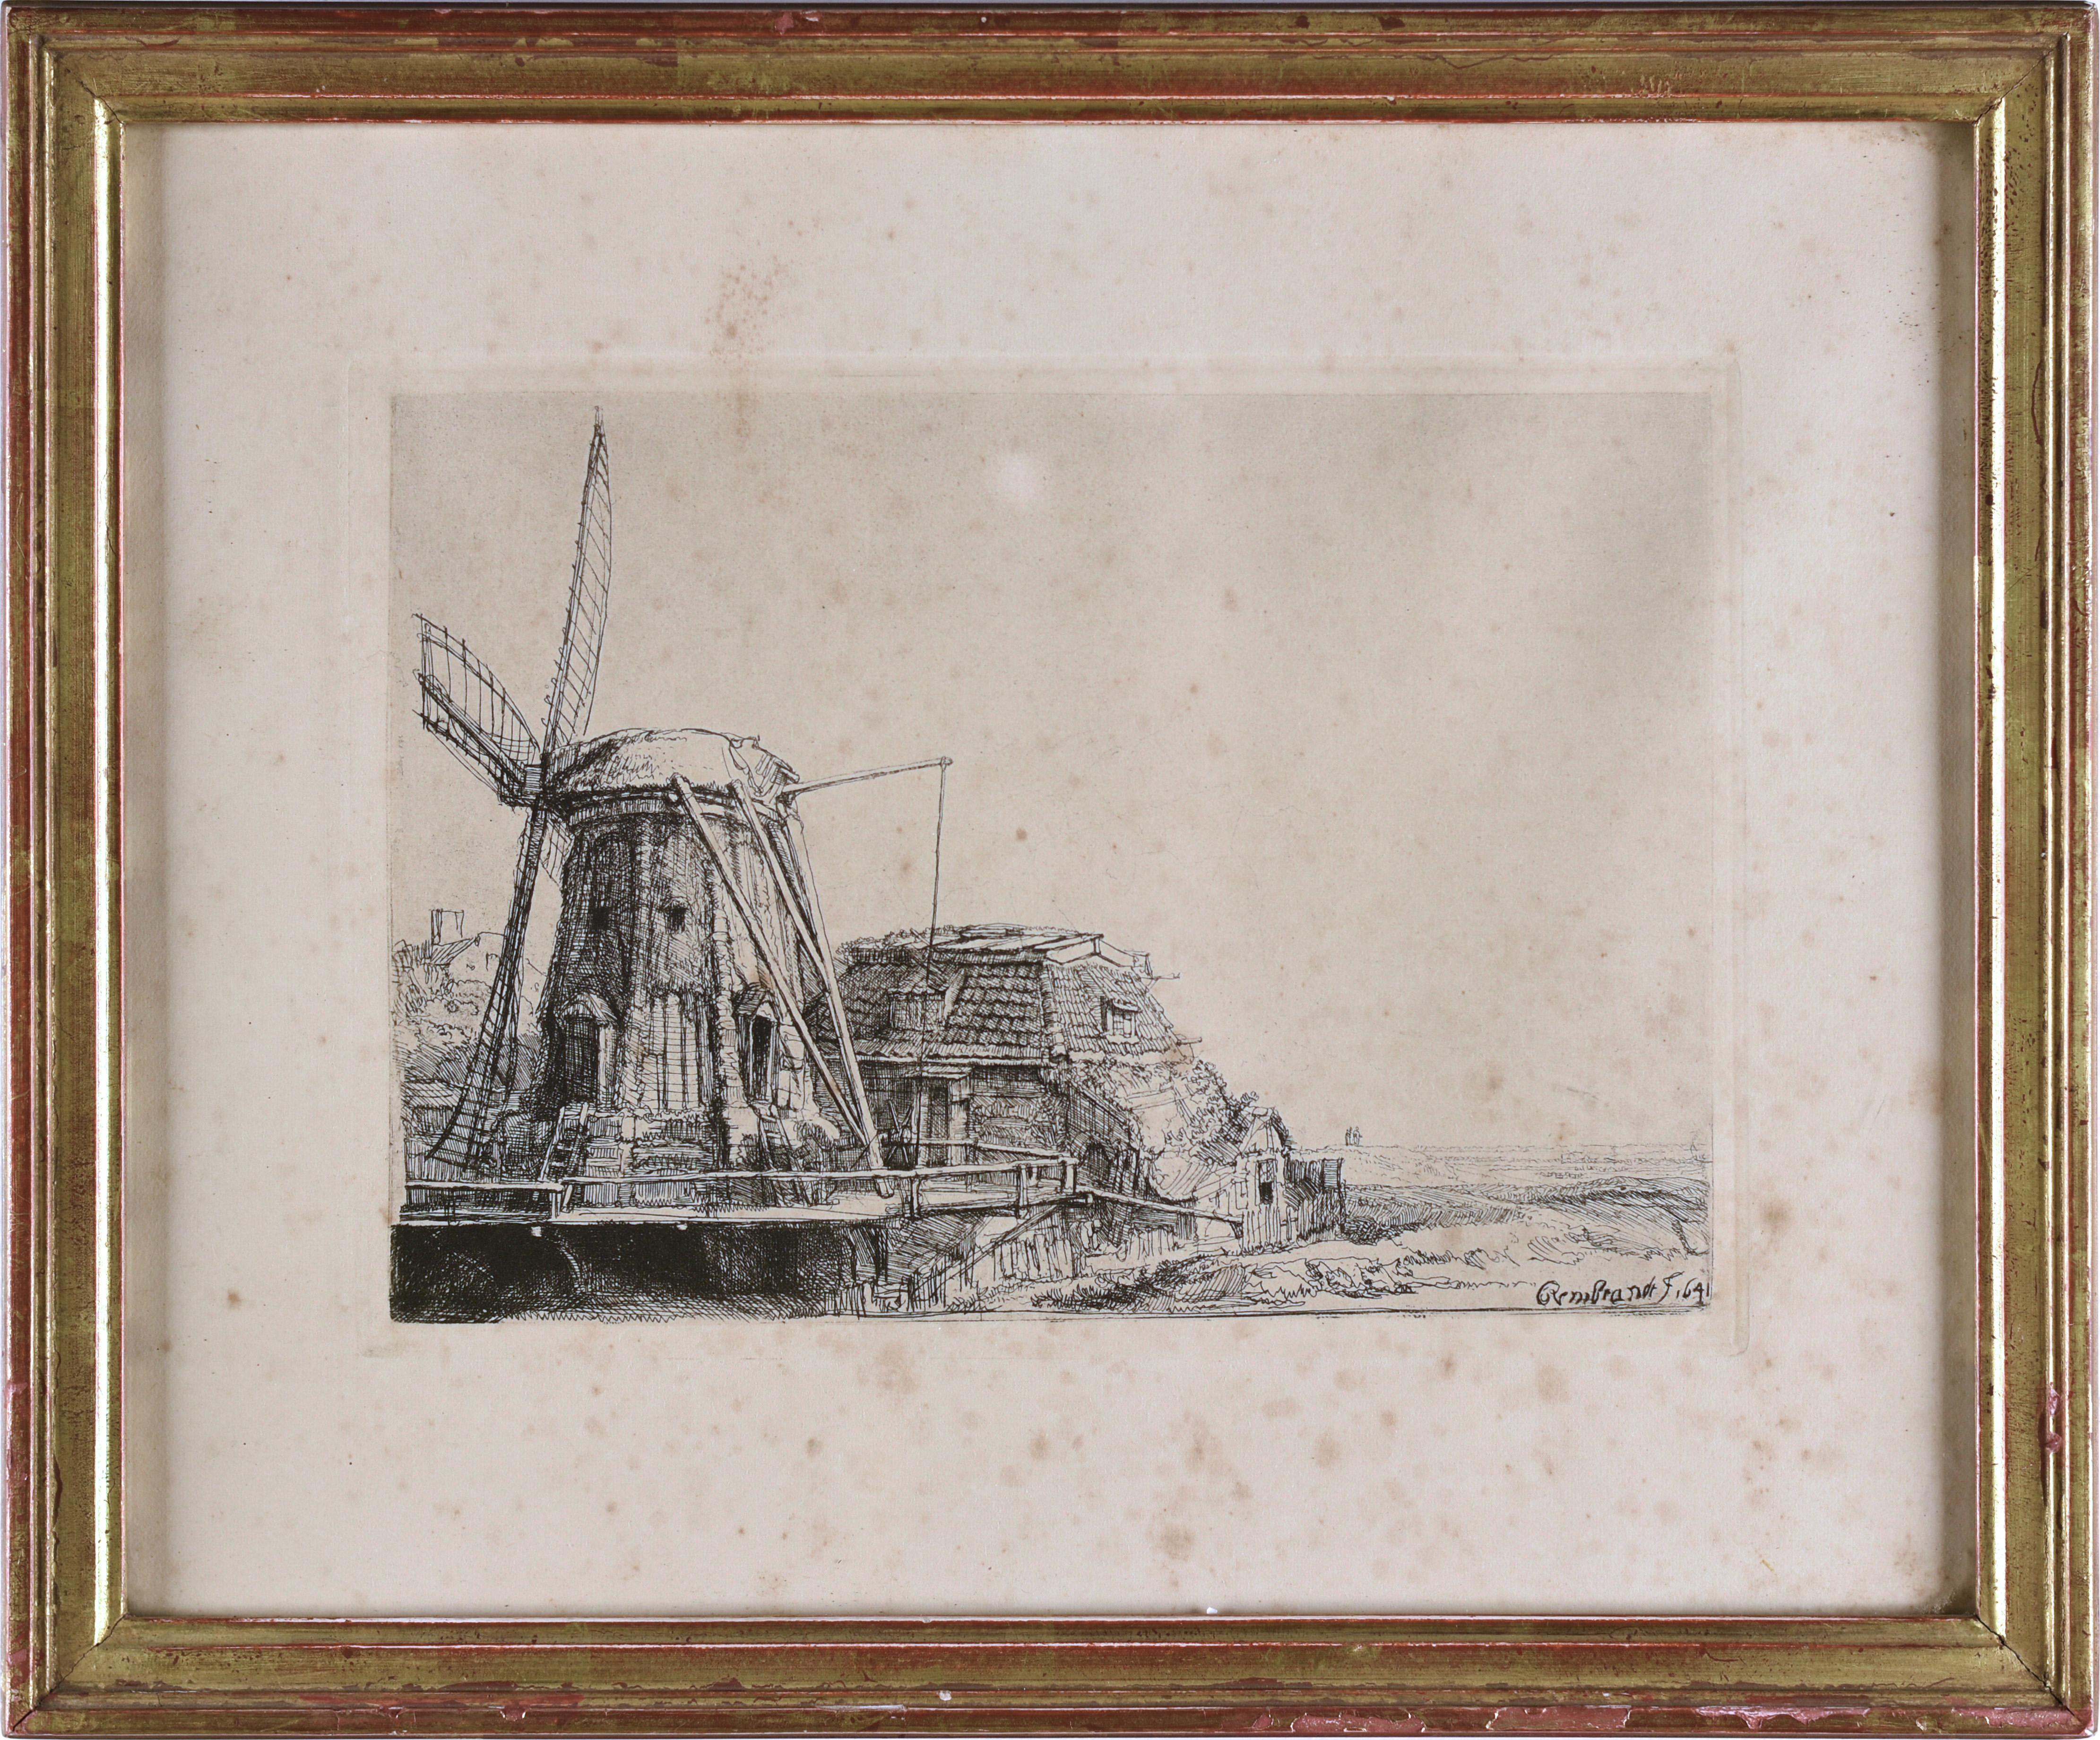 Rembrandt van Rijn Landscape Print - The Windmill (1641), Rembrandt engraving